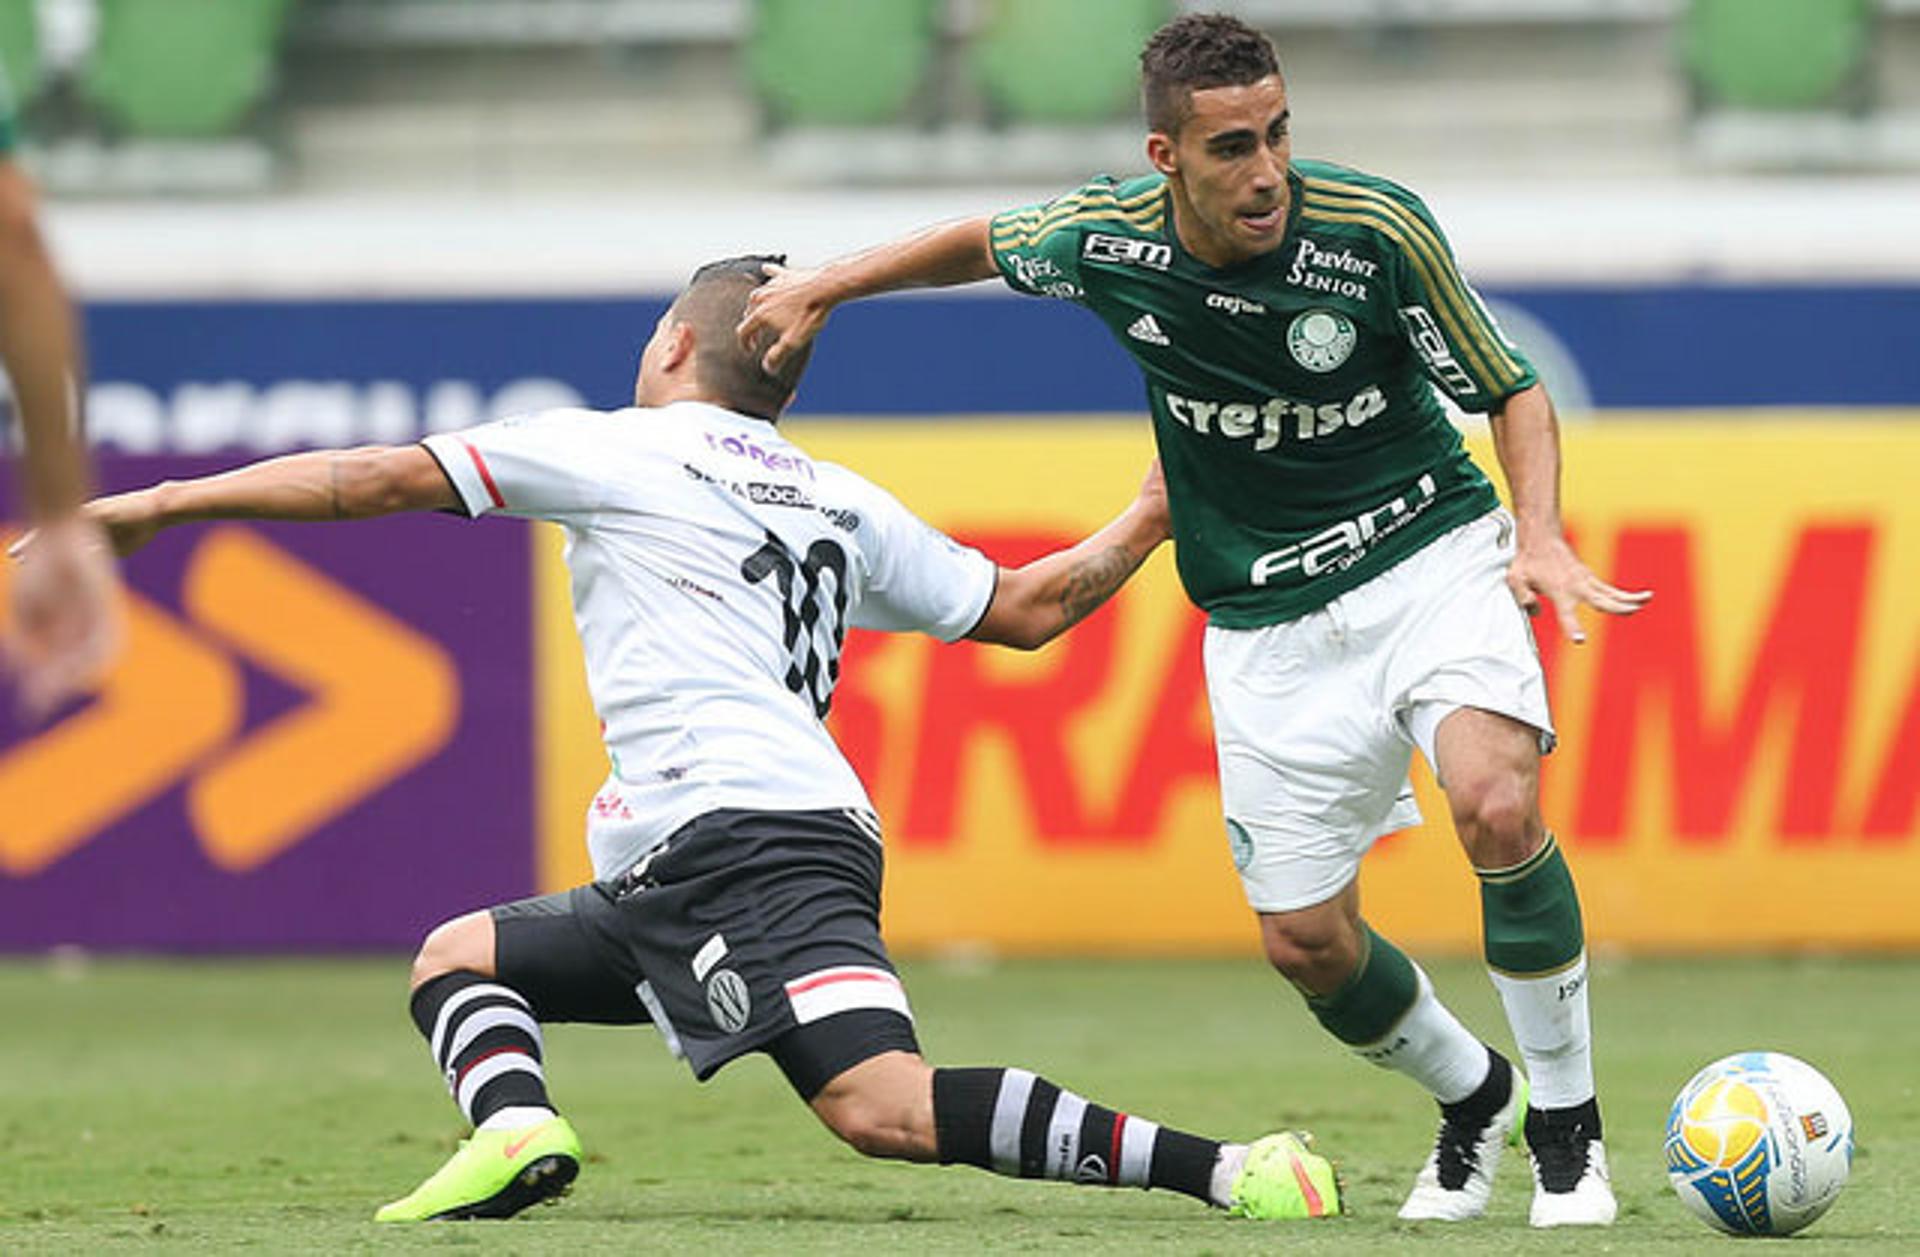 Palmeiras 1 x 0 XV de Piracicaba - Paulistão 2015 - 26.455 pagantes